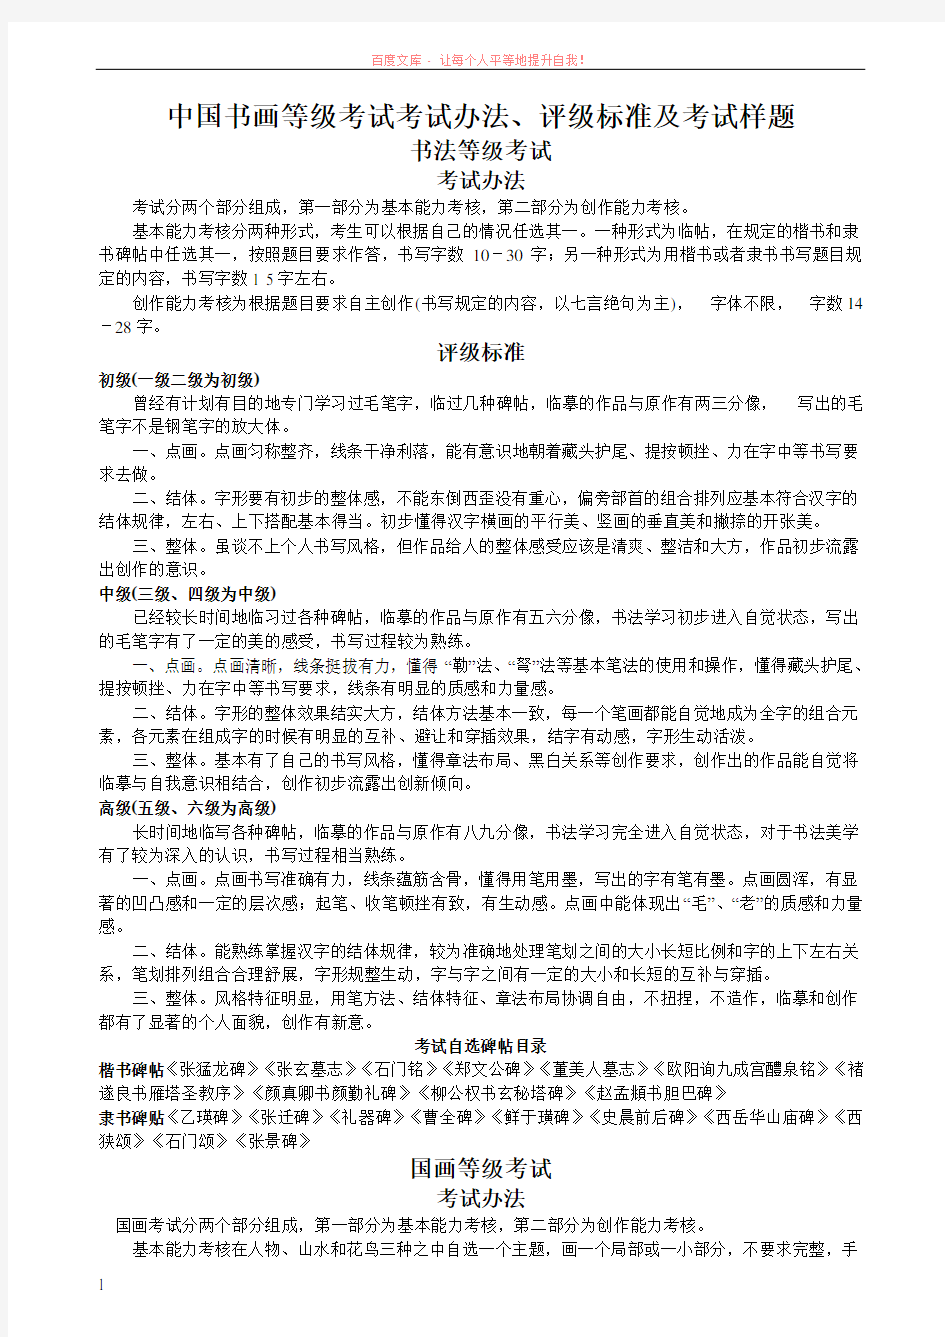 中国书画等级考试考试办法评级标准及考试样题 (1)